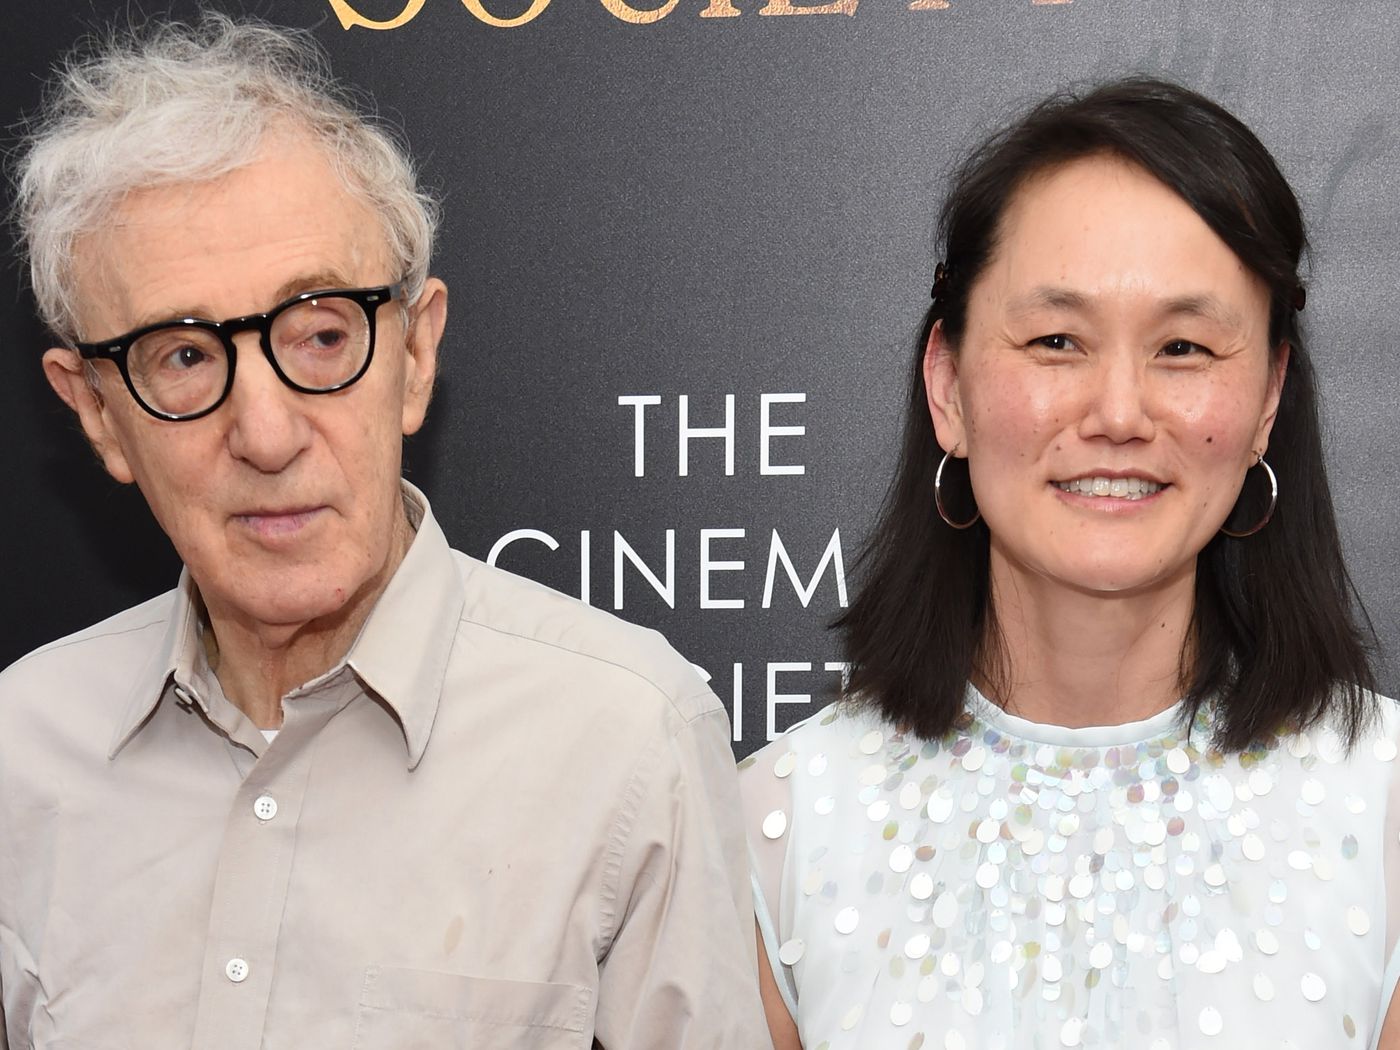 Soţia lui Woody Allen o acuză pe mama ei adoptivă de abuzuri fizice şi psihice